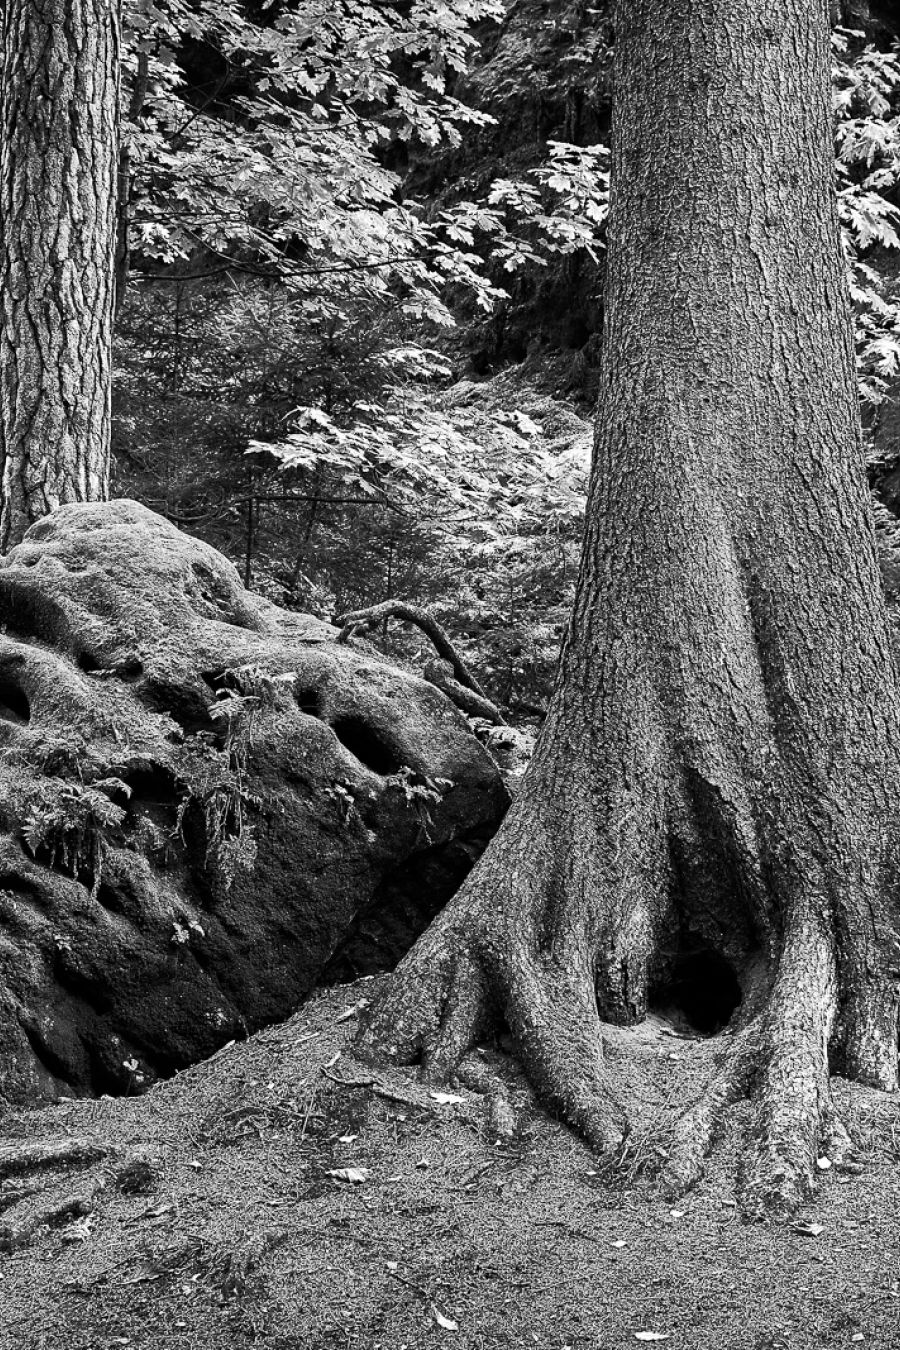 Der Baum der spricht in Schwarz-Weiss fotografiert.